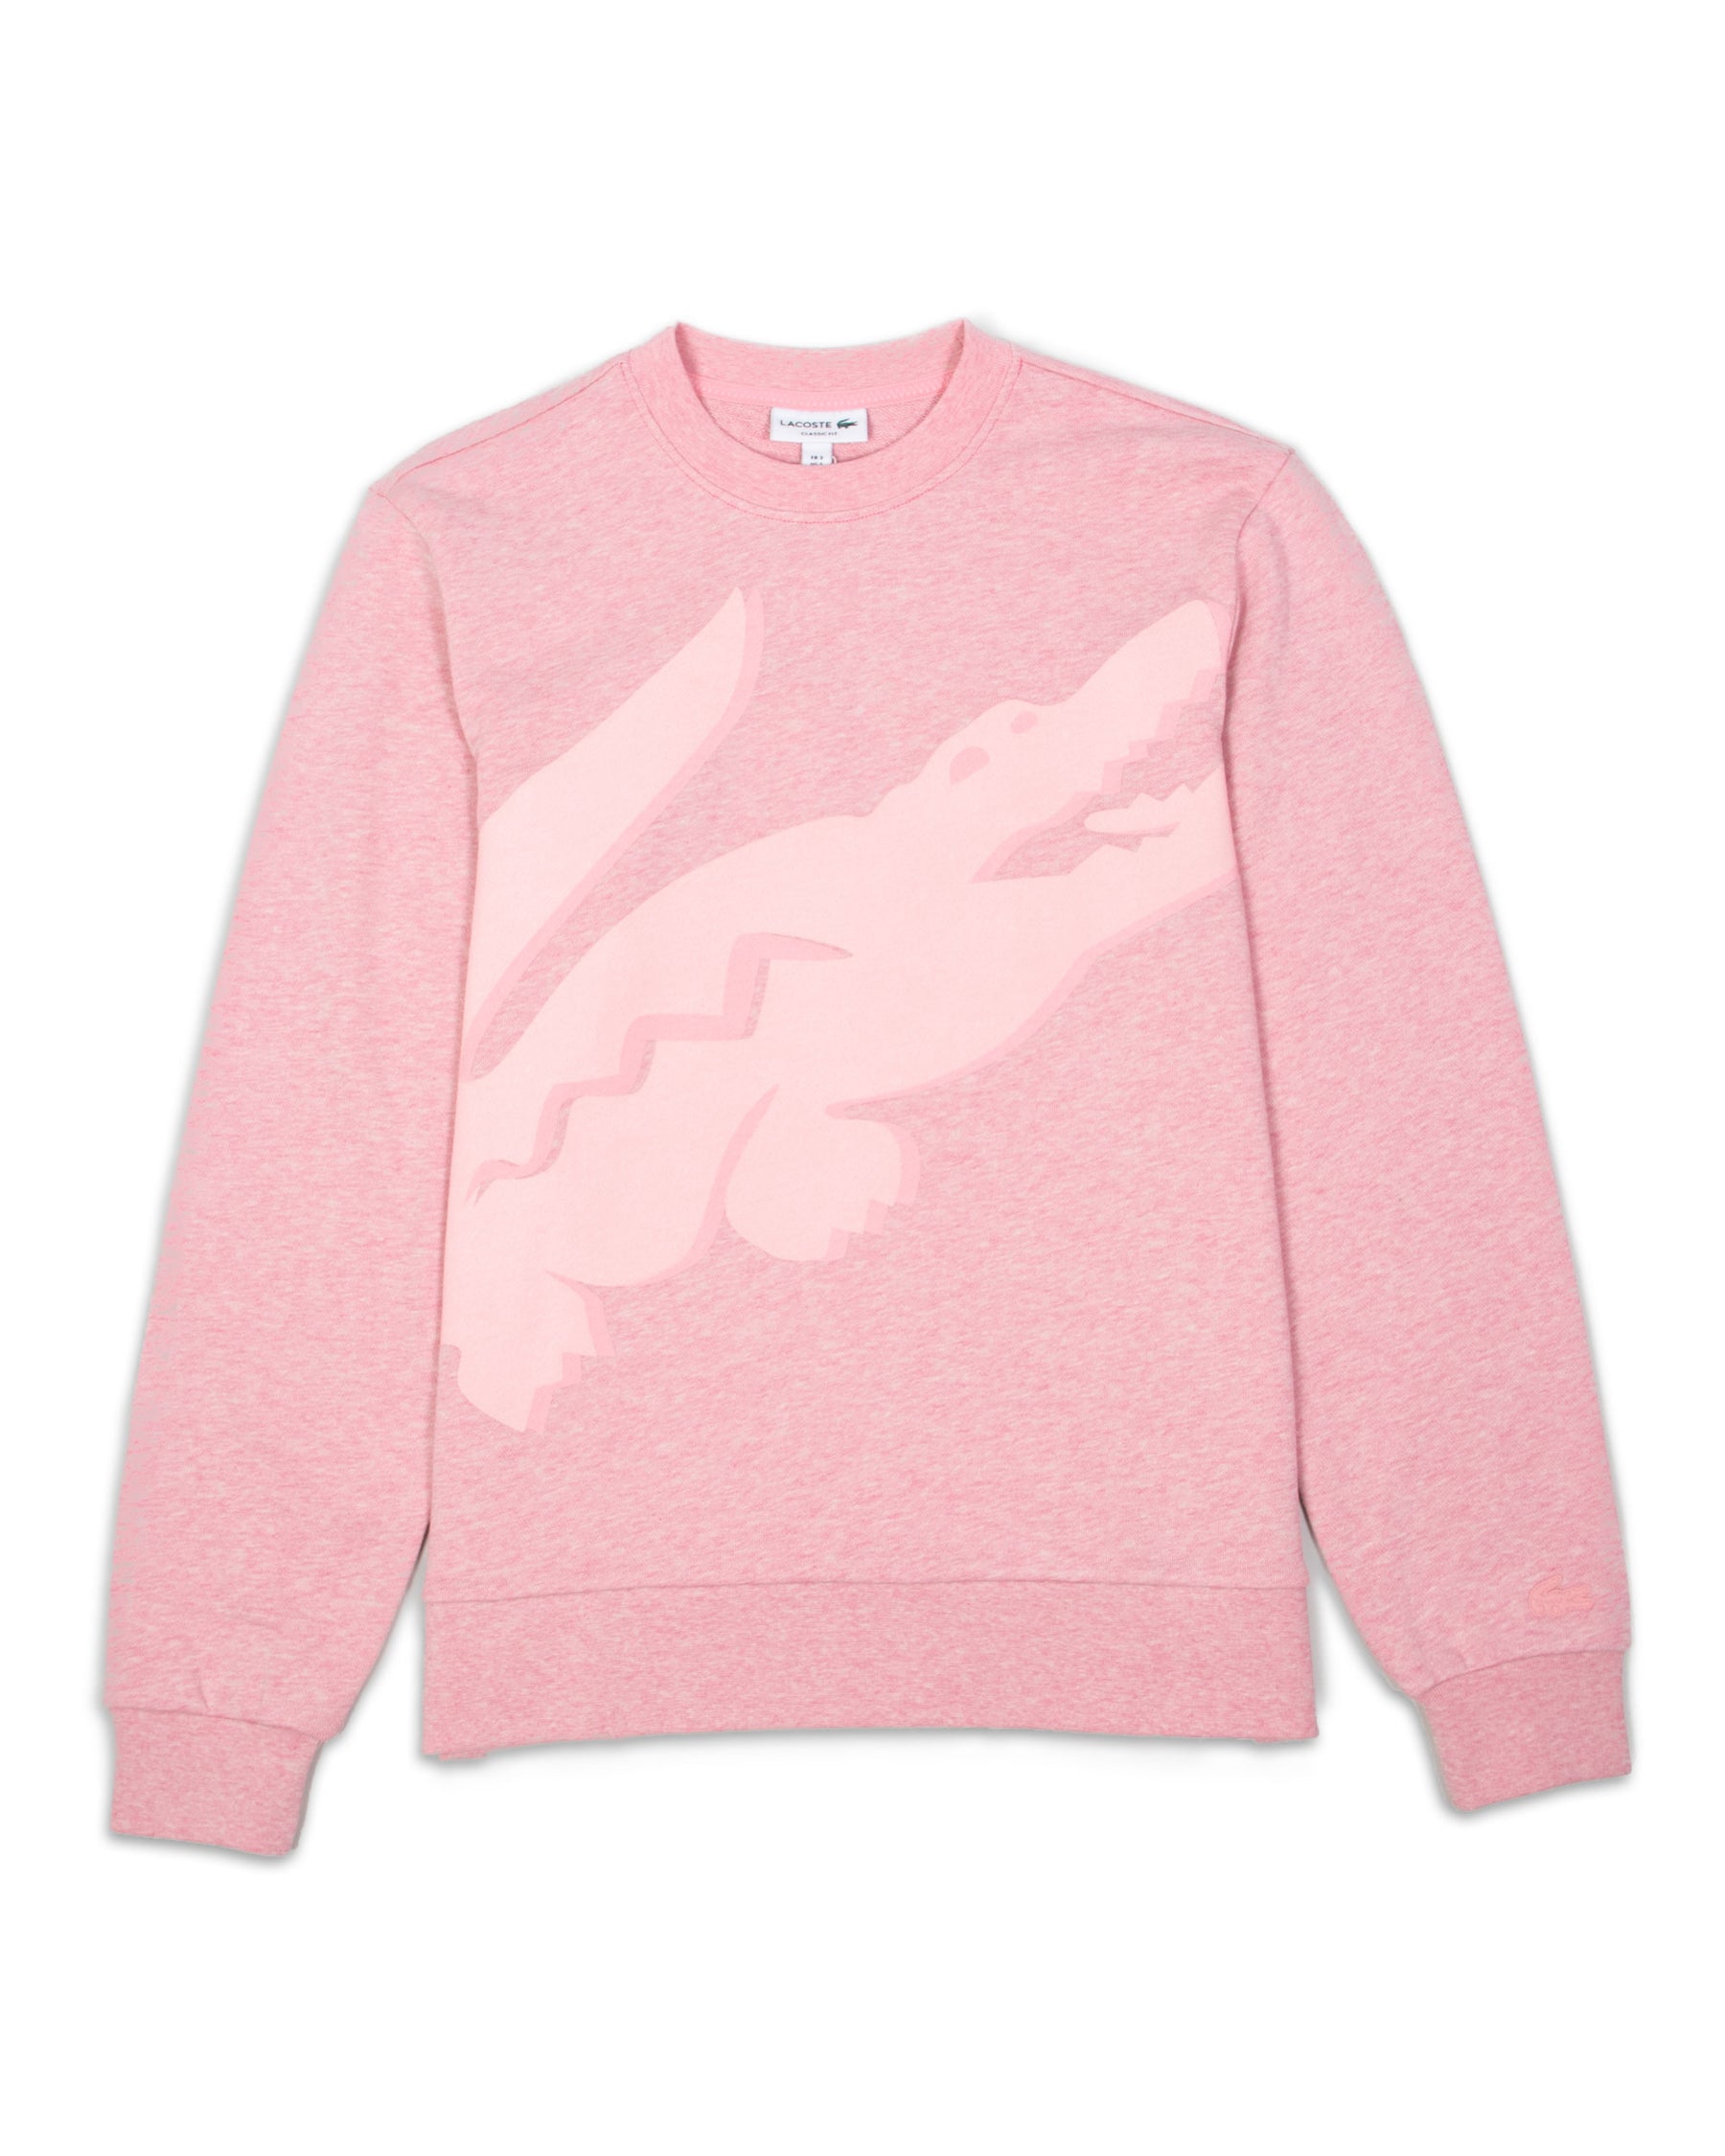 Sweatshirt Lacoste Big Logo Pink